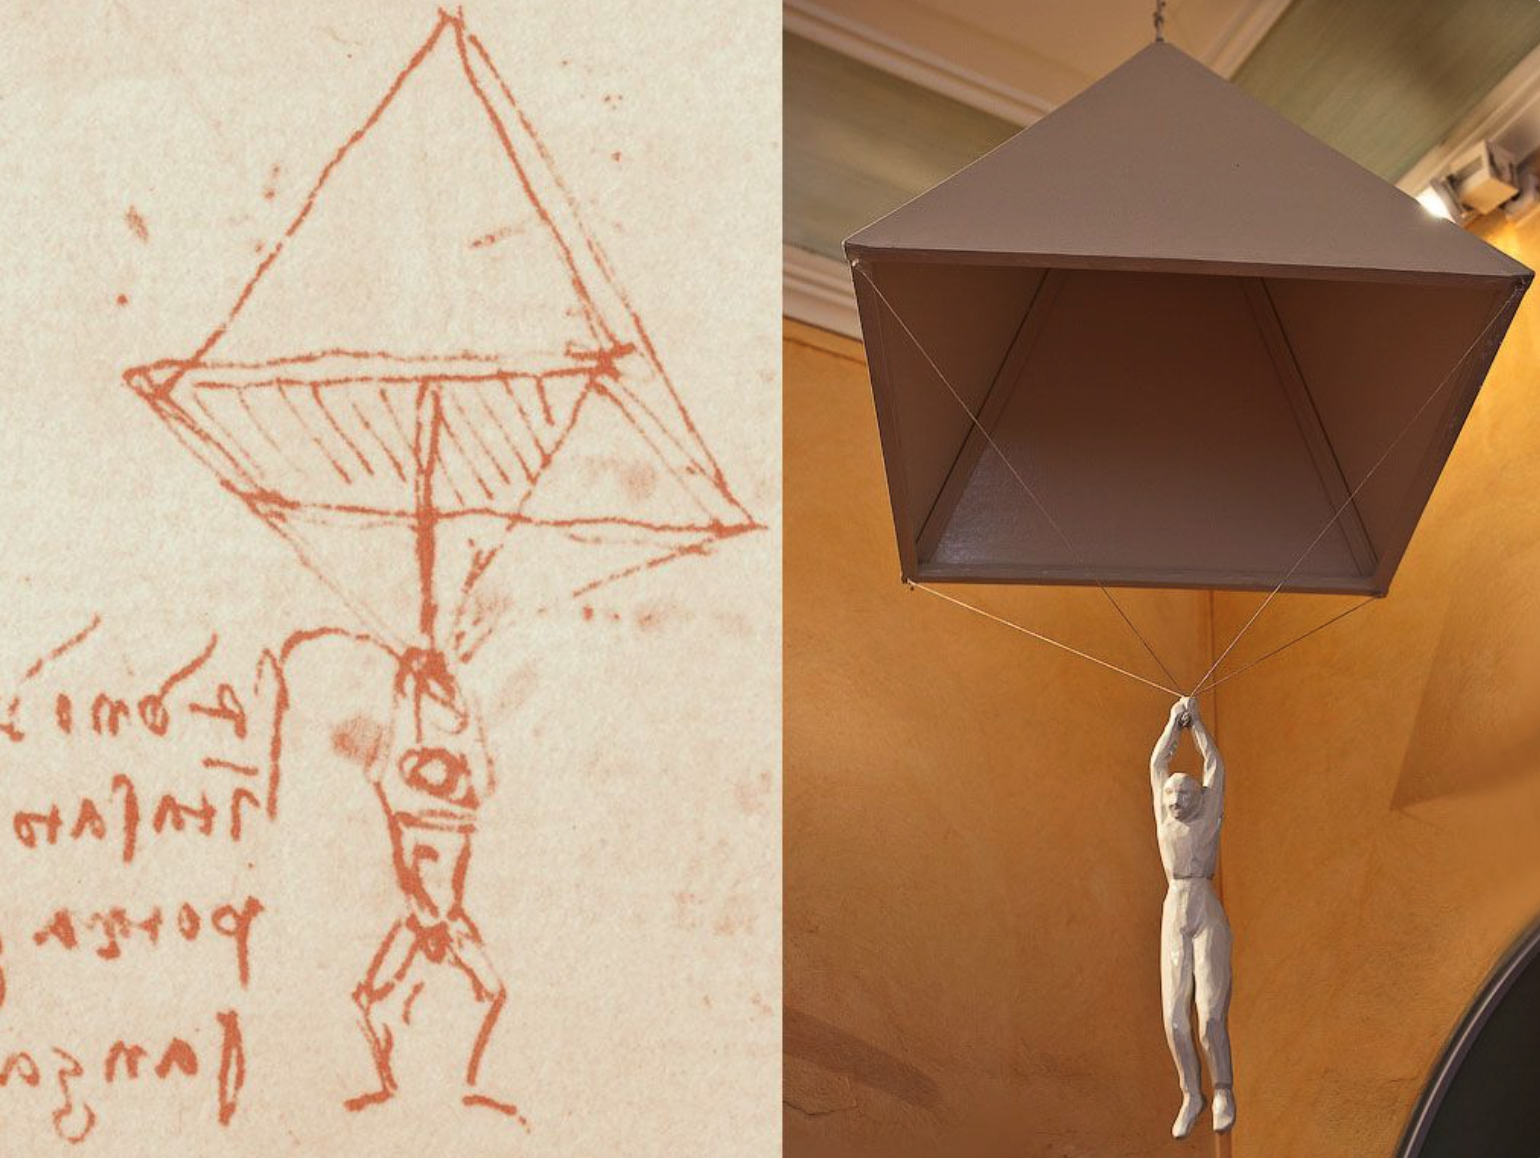 da Vinci's Early Parachute Sketch